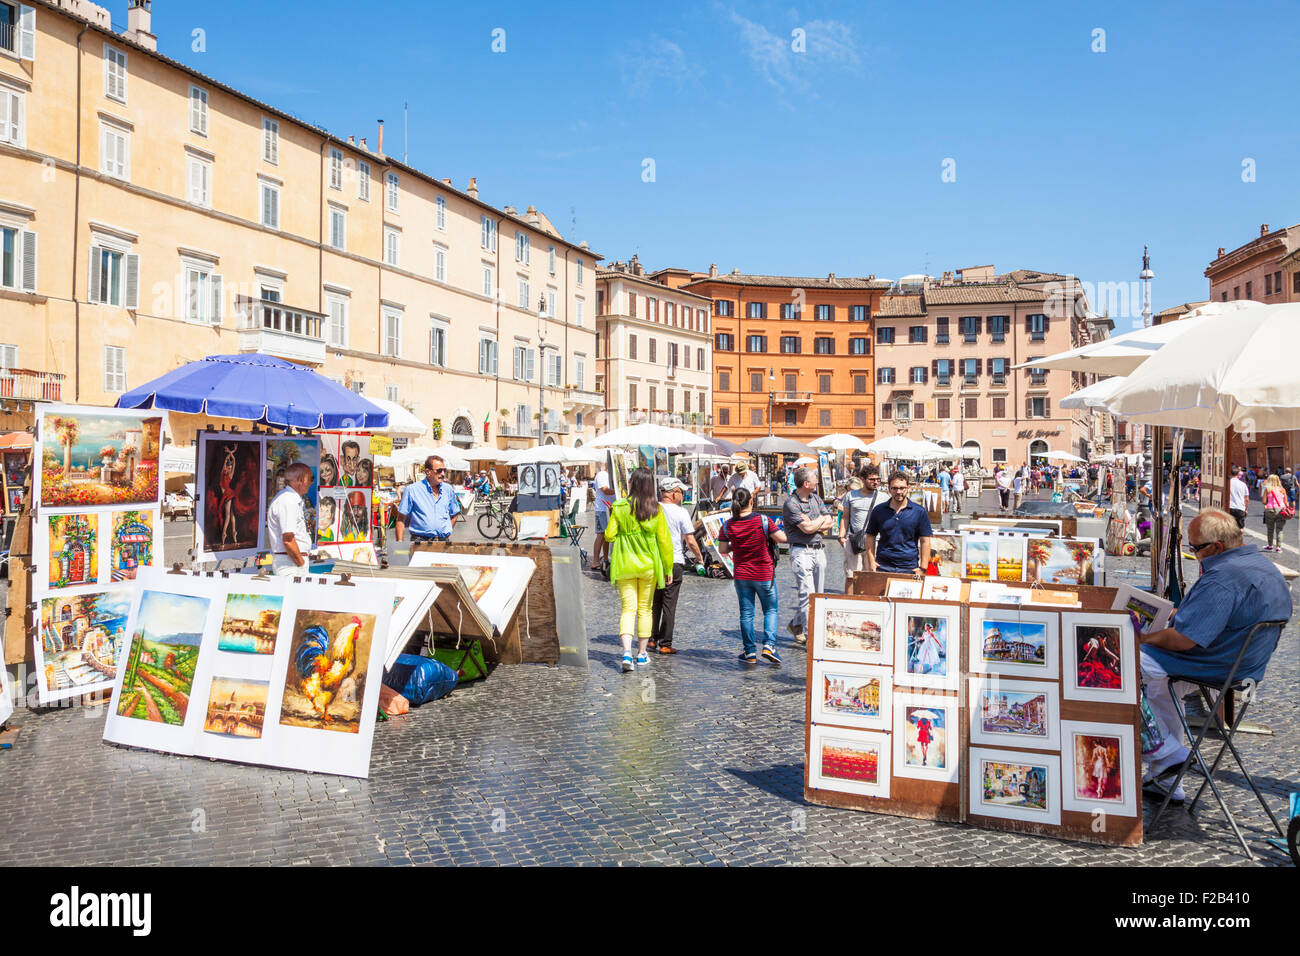 La peinture d'artistes et la vente d'art de la Piazza Navona Rome Italie Roma Lazio Italie Europe de l'UE Banque D'Images